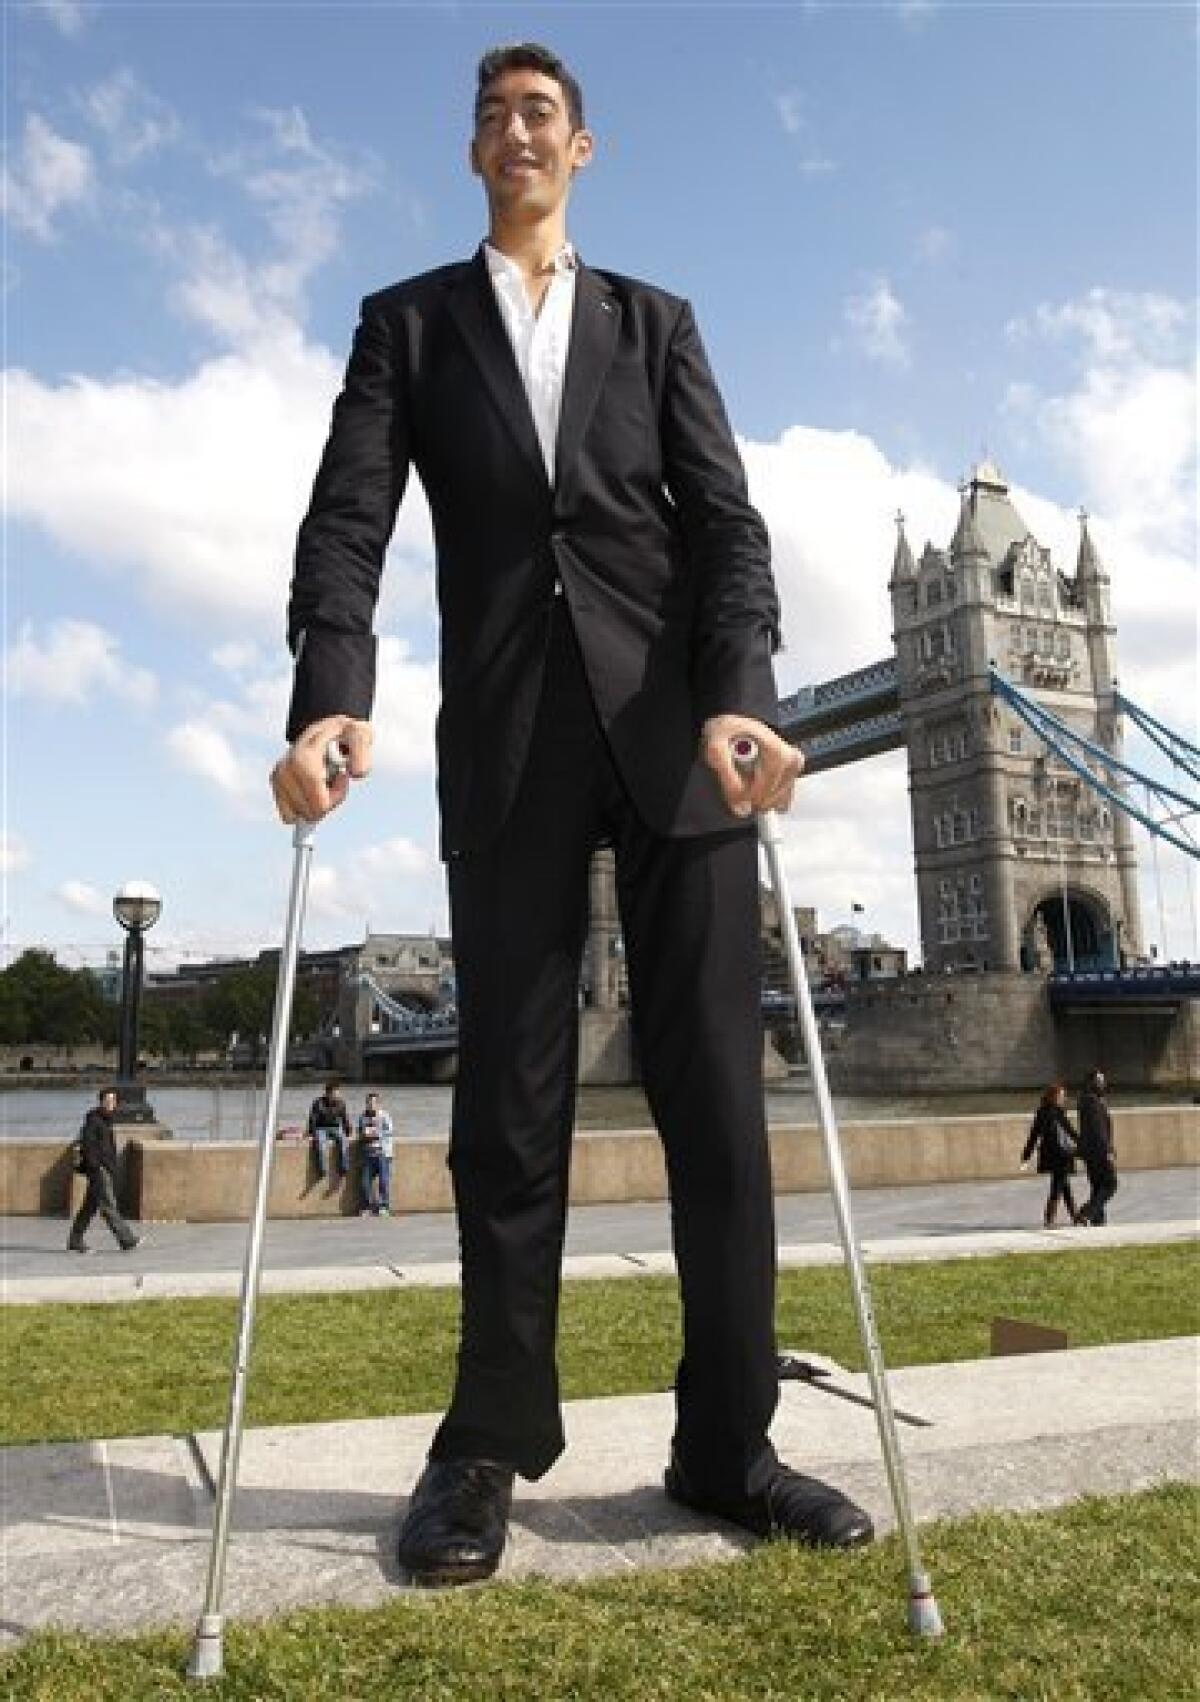 8'1" Turk takes title of world's tallest man The San Diego UnionTribune